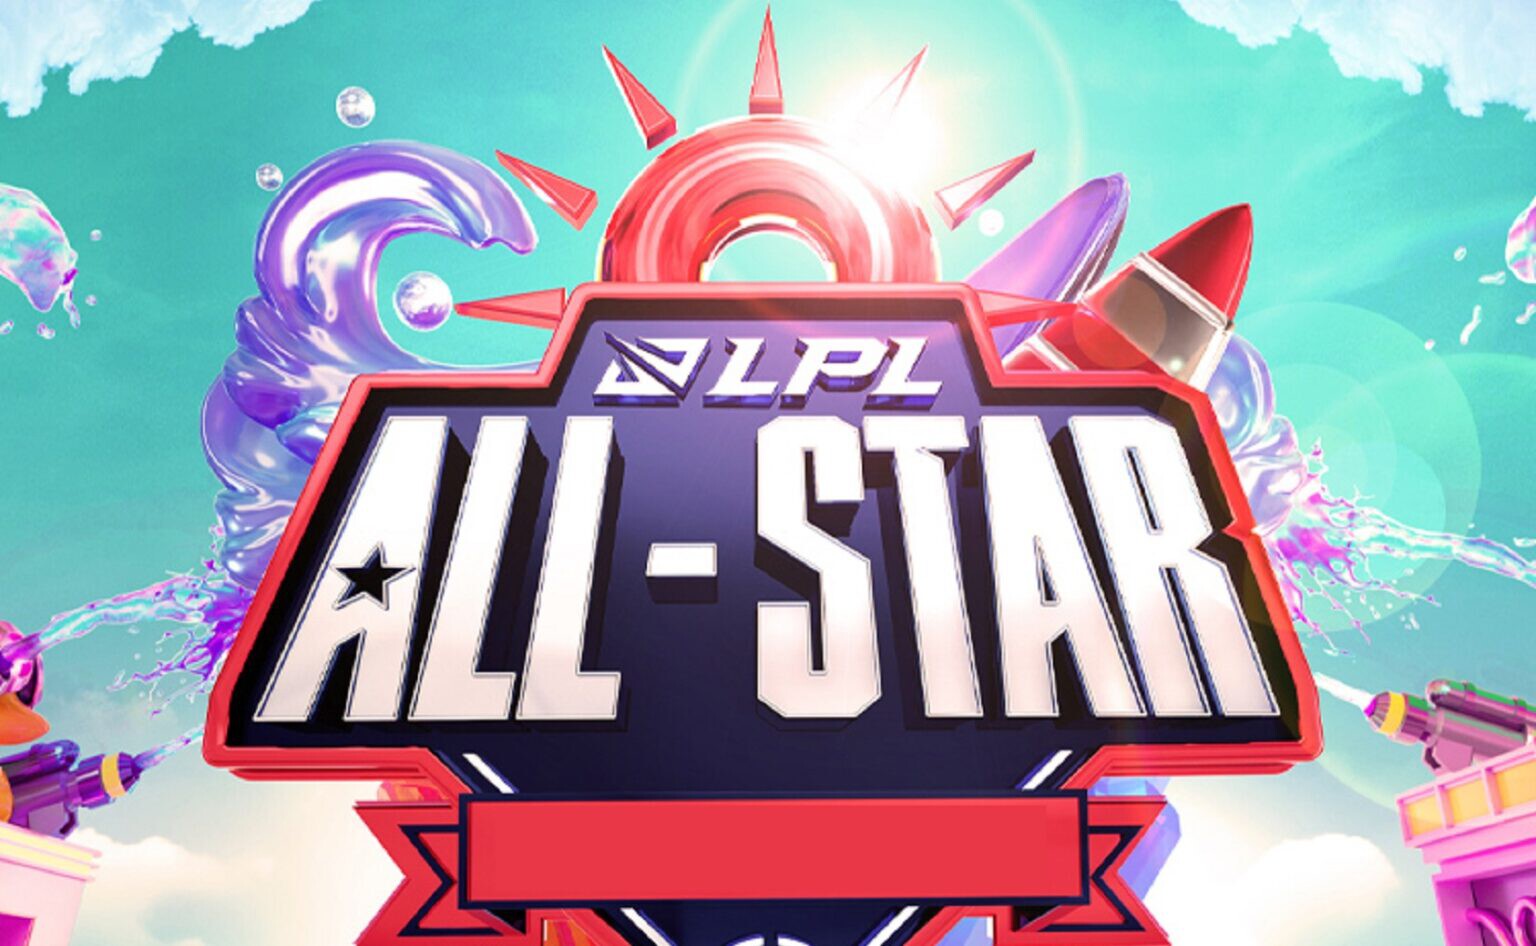 All Star Lpl 2021 1536x946 (1)